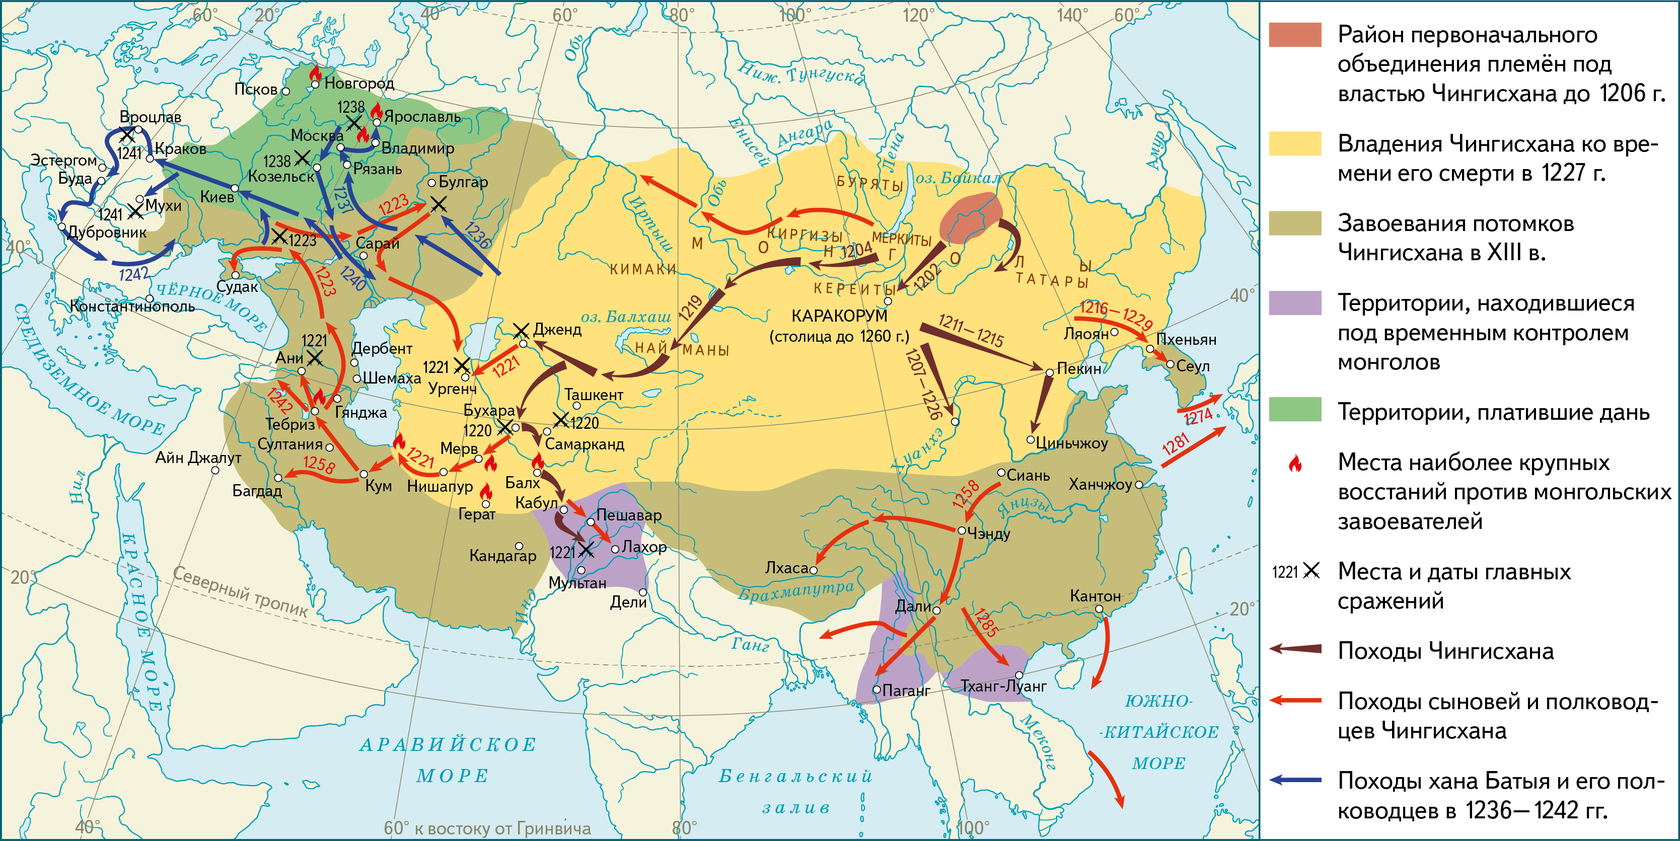 Владение великого хана. Завоевательные походы Чингисхана карта. Монгольская Империя 12 век. Монгольская Империя Чингисхана карта. Монгольские завоевания Чингисхана на карте.